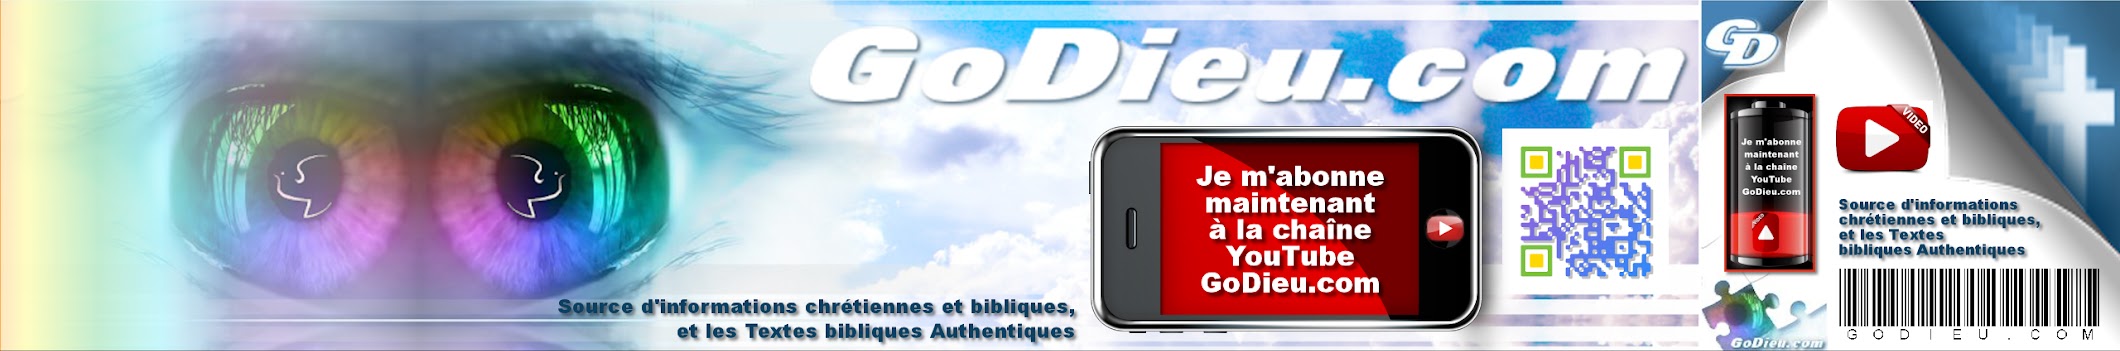 GoDieu.com - Source d'informations chrétiennes et bibliques,
et les Textes bibliques Authentiques